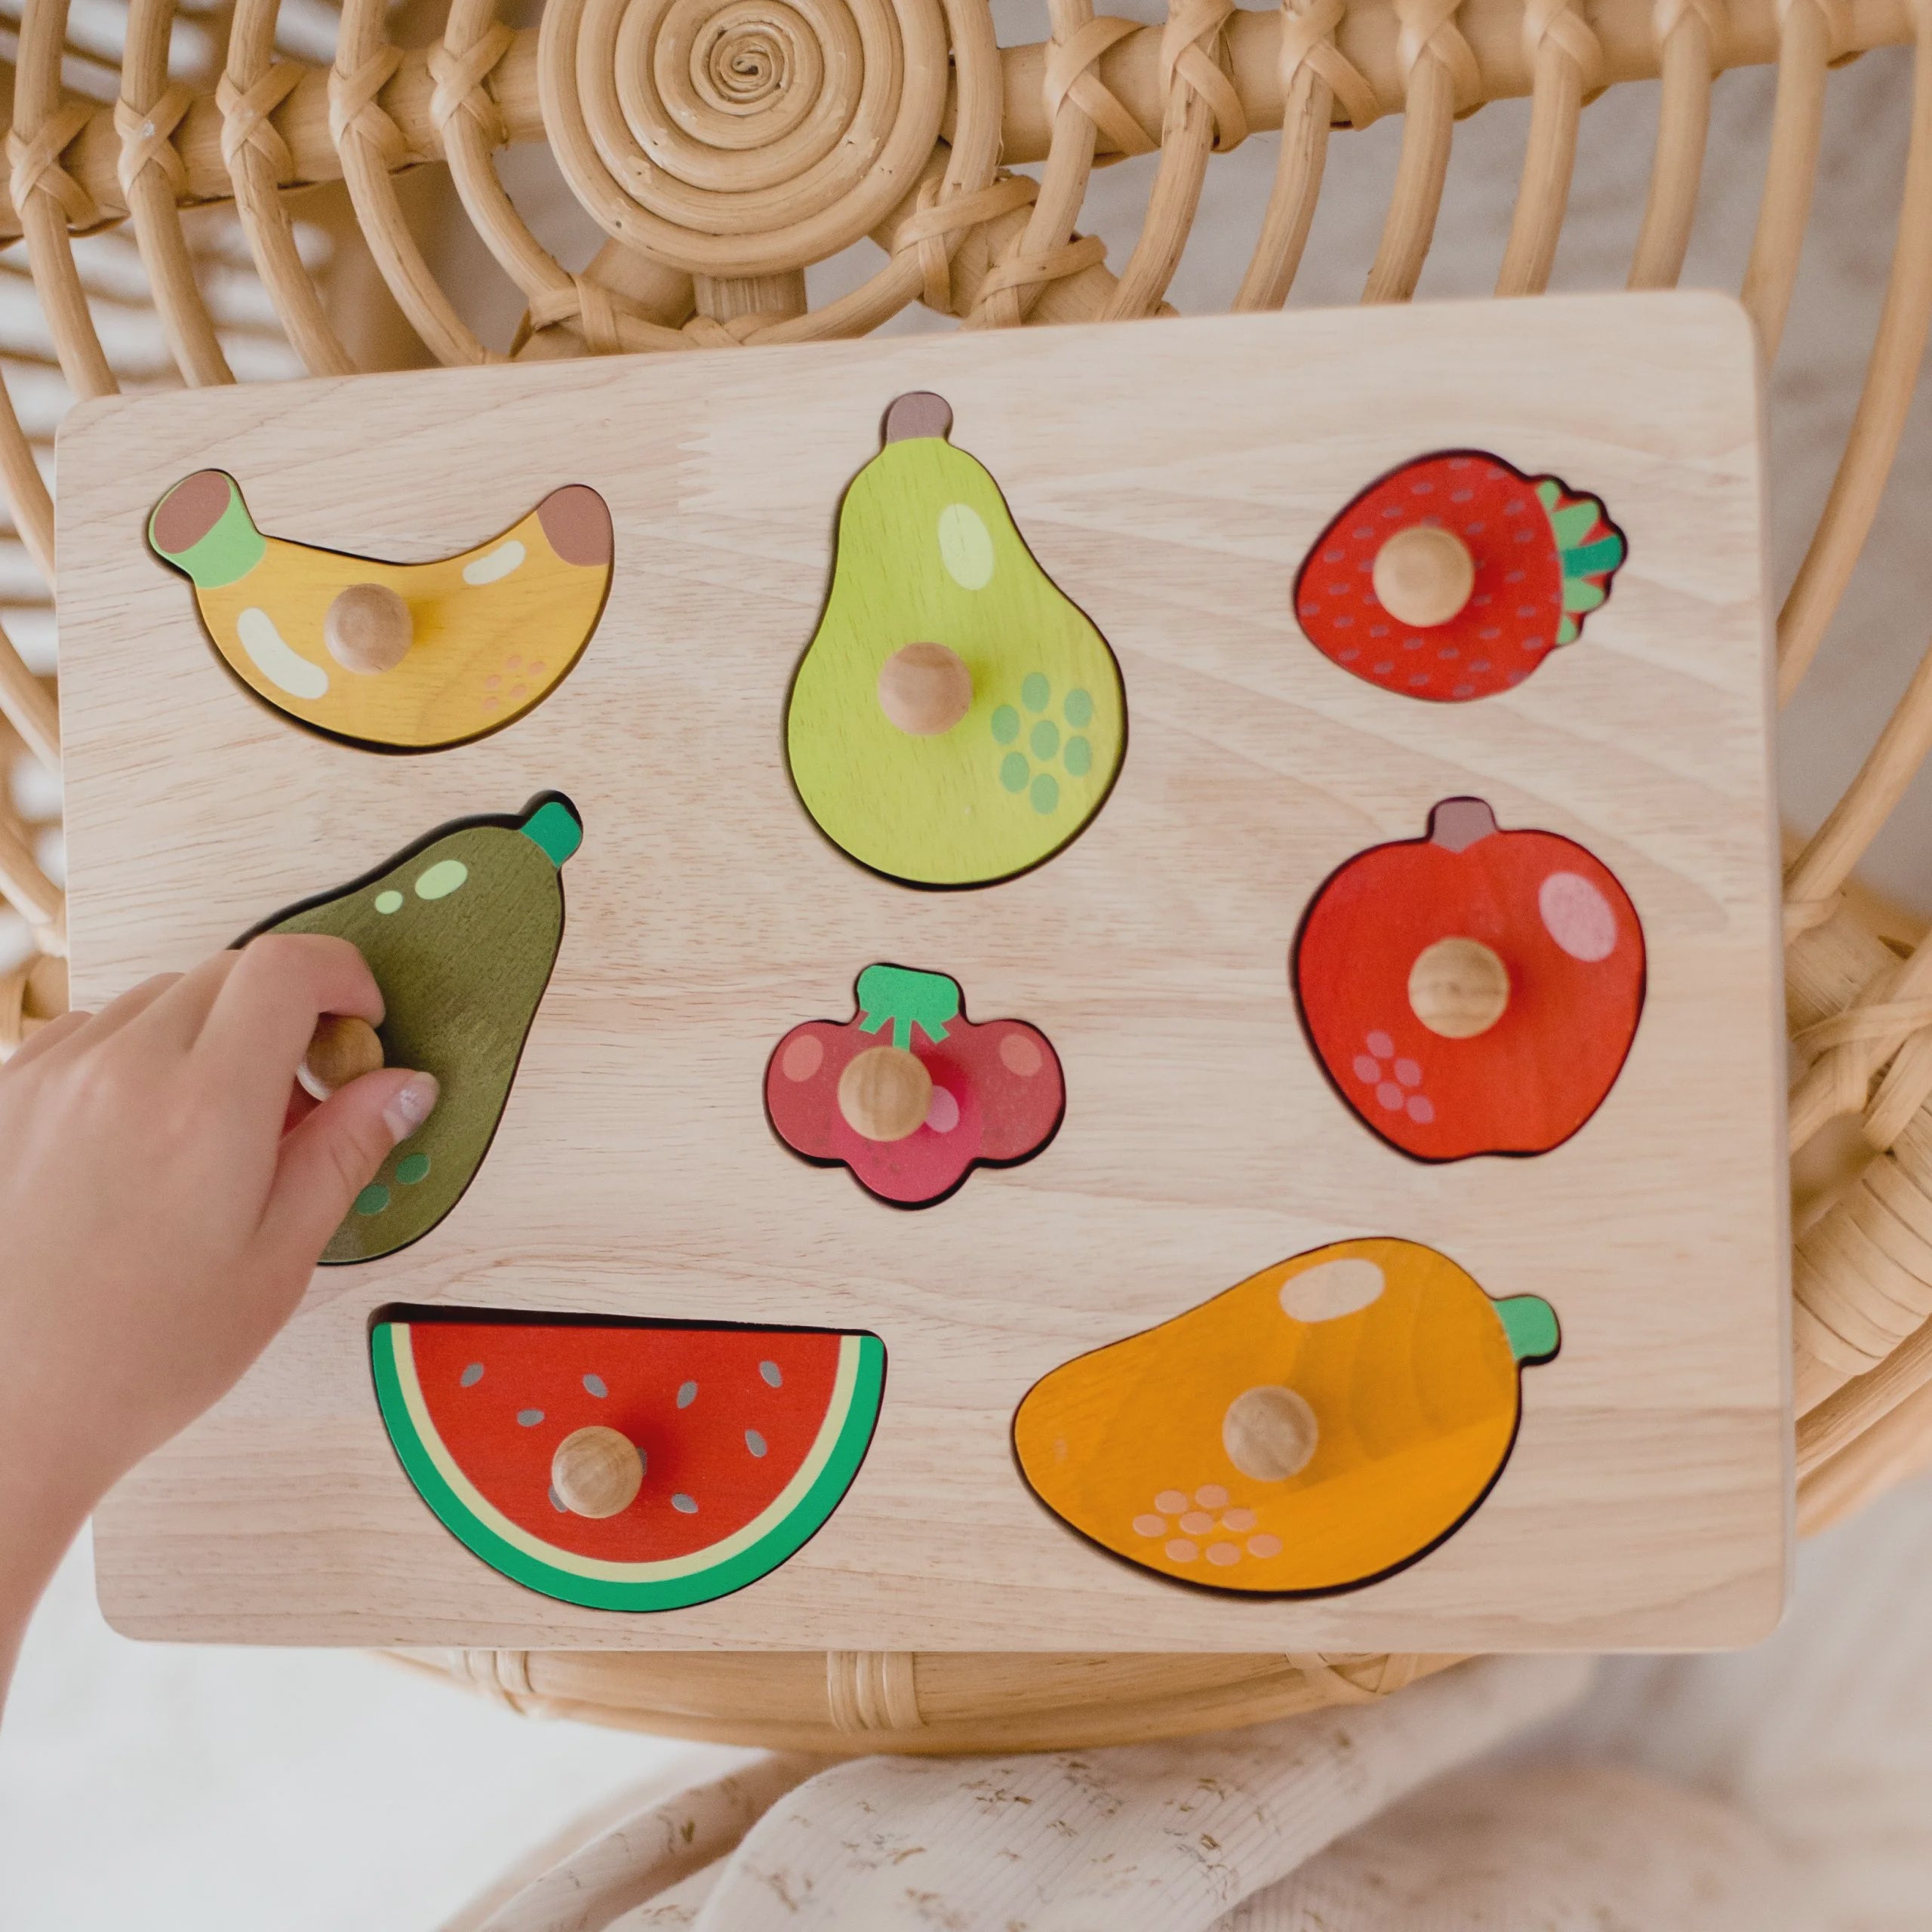 Qtoys - Fruit Knob Puzzle - Wooden